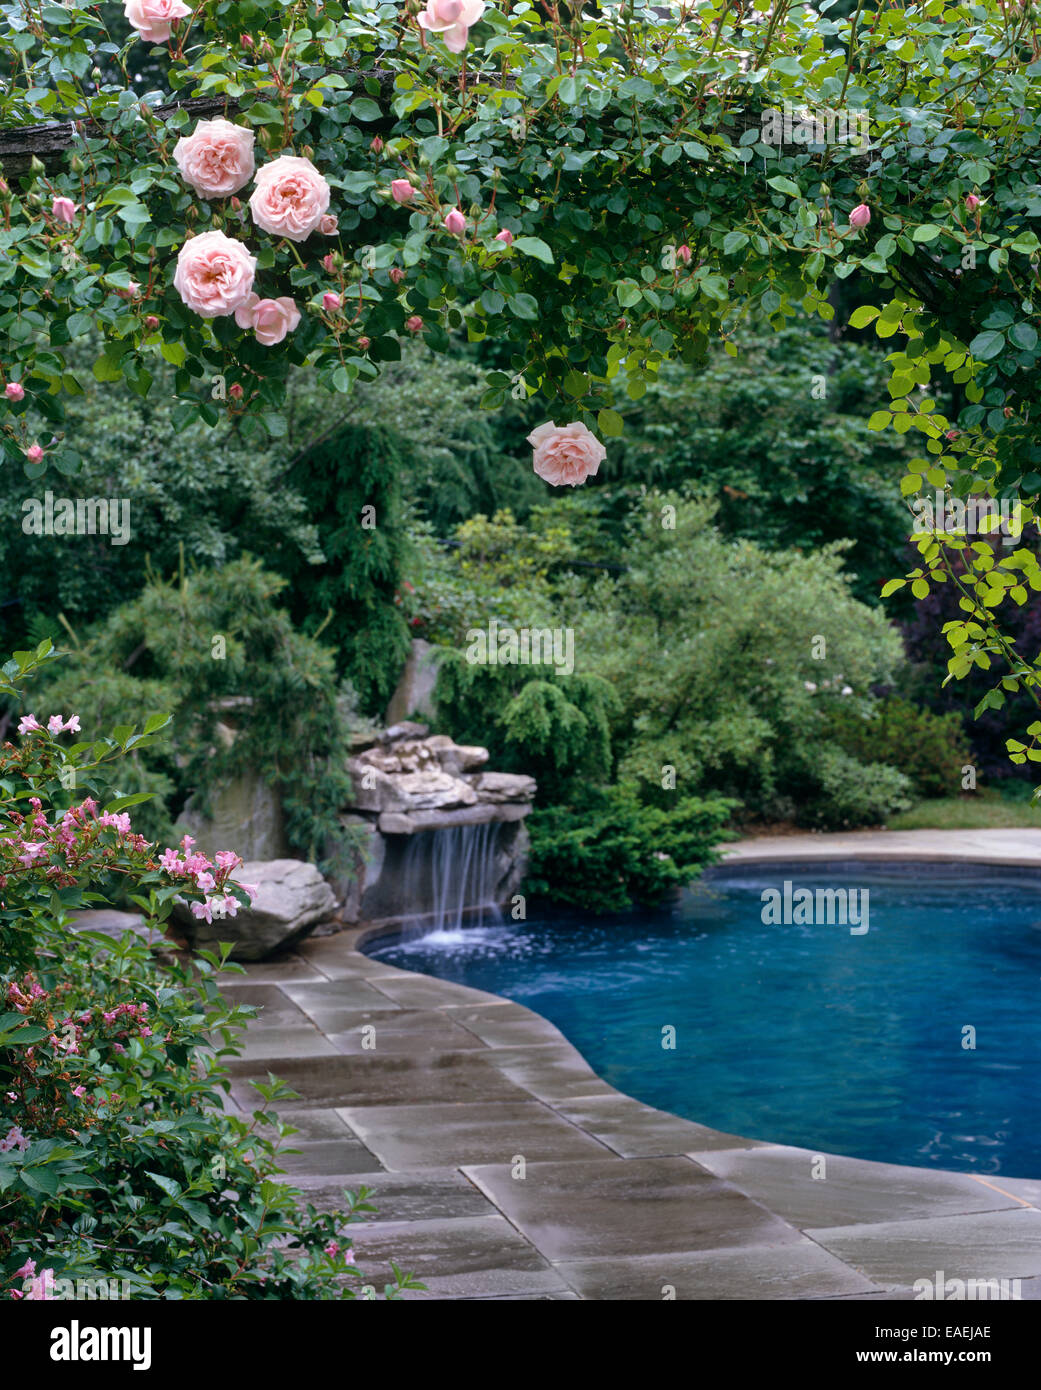 Piscine et chute d'eau, telle que perçue par les roses de jardin Banque D'Images